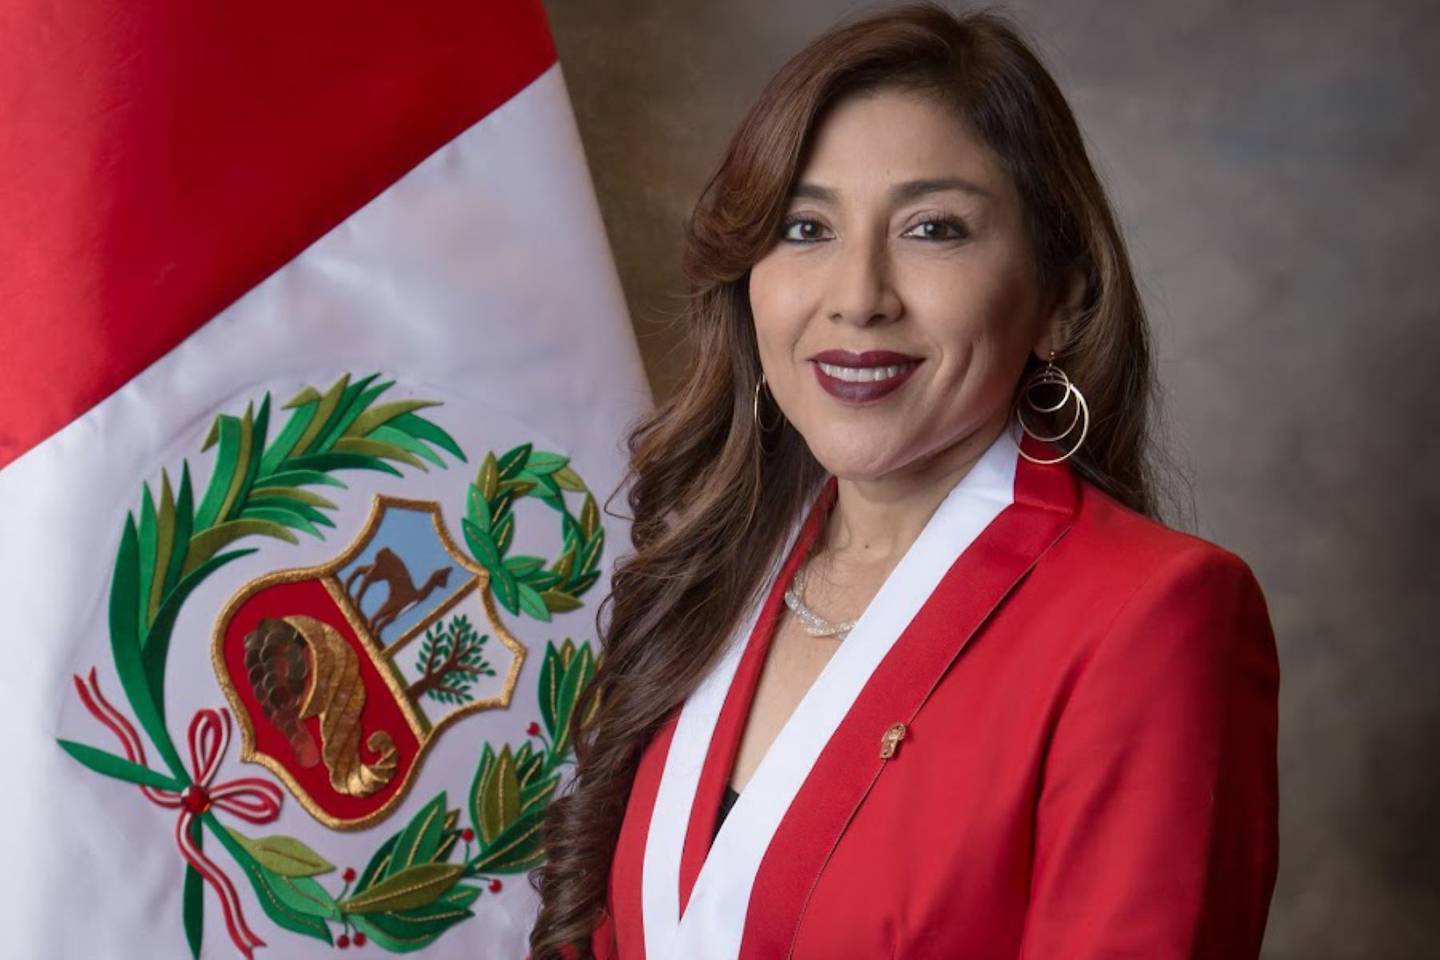 La congresista de Alianza para el Progreso (APP) electa para el período congresal 2021-2026, Lady Camones, fue elegida presidenta del Congreso en sucesión de María del Carmen Alva.